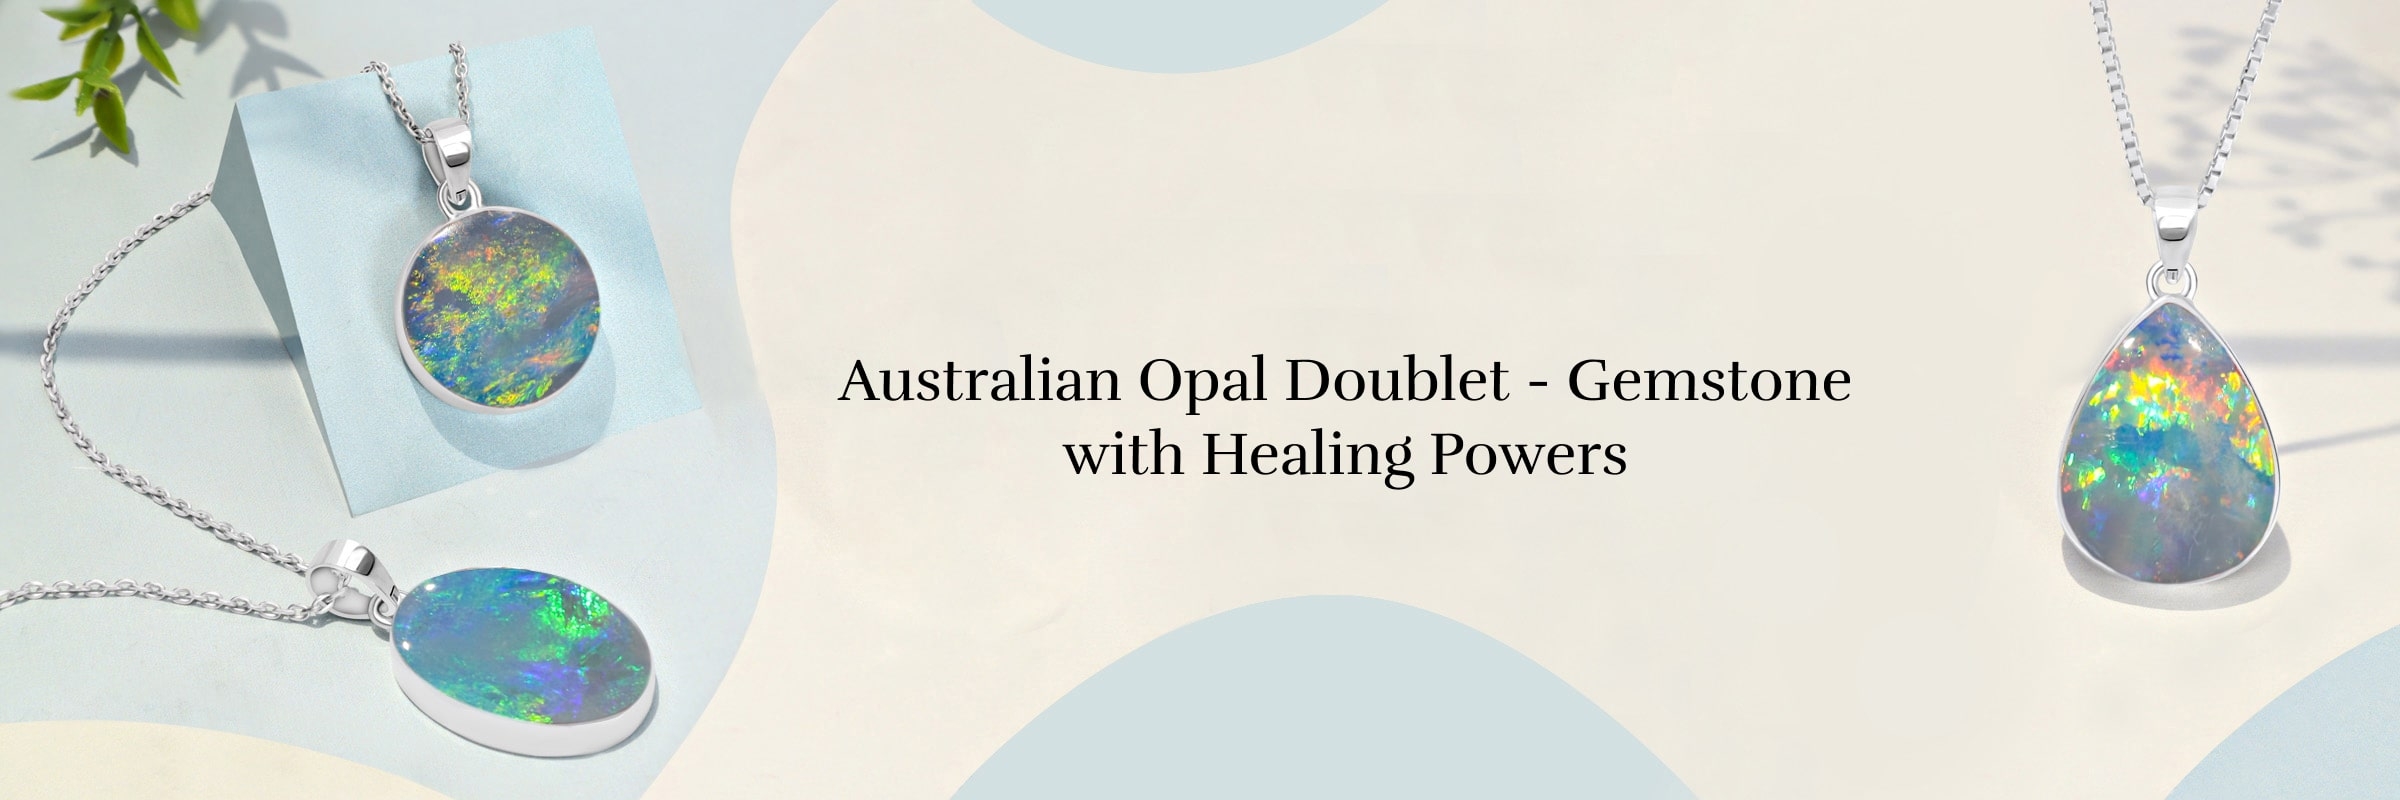 Healing properties of Australian Opal Doublet